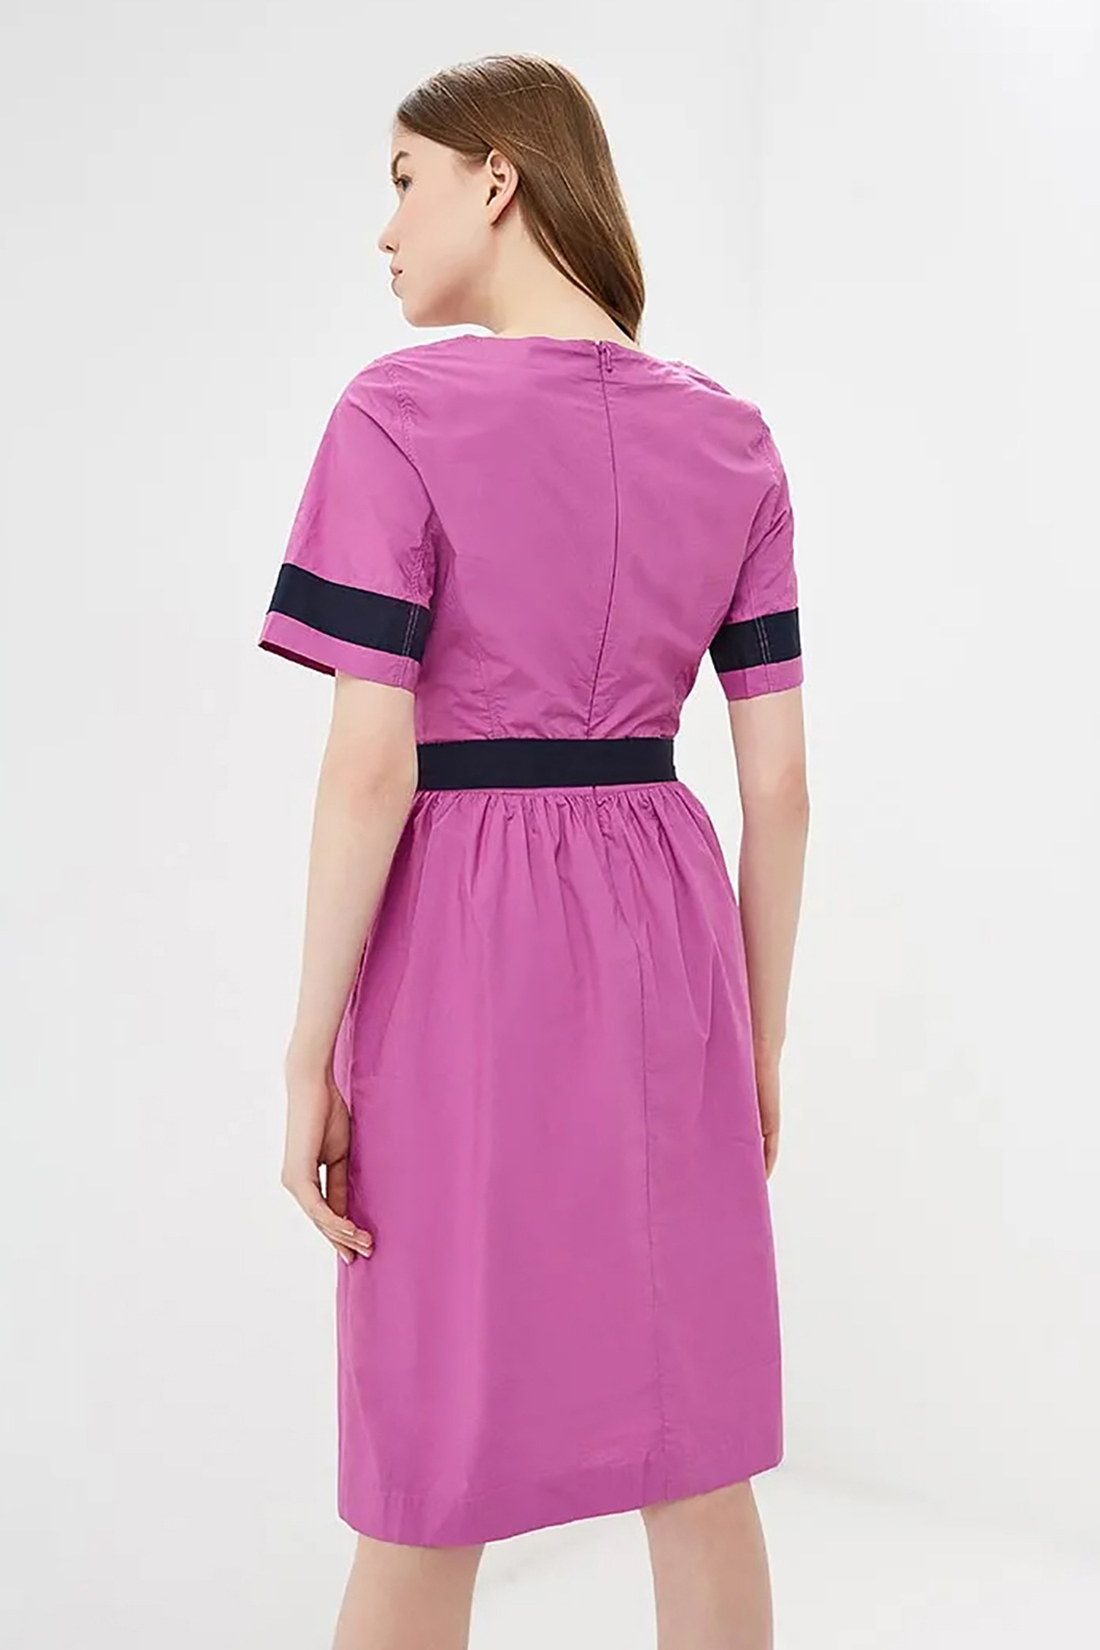 Платье с контрастной отделкой (арт. baon B459062), размер L, цвет розовый Платье с контрастной отделкой (арт. baon B459062) - фото 2